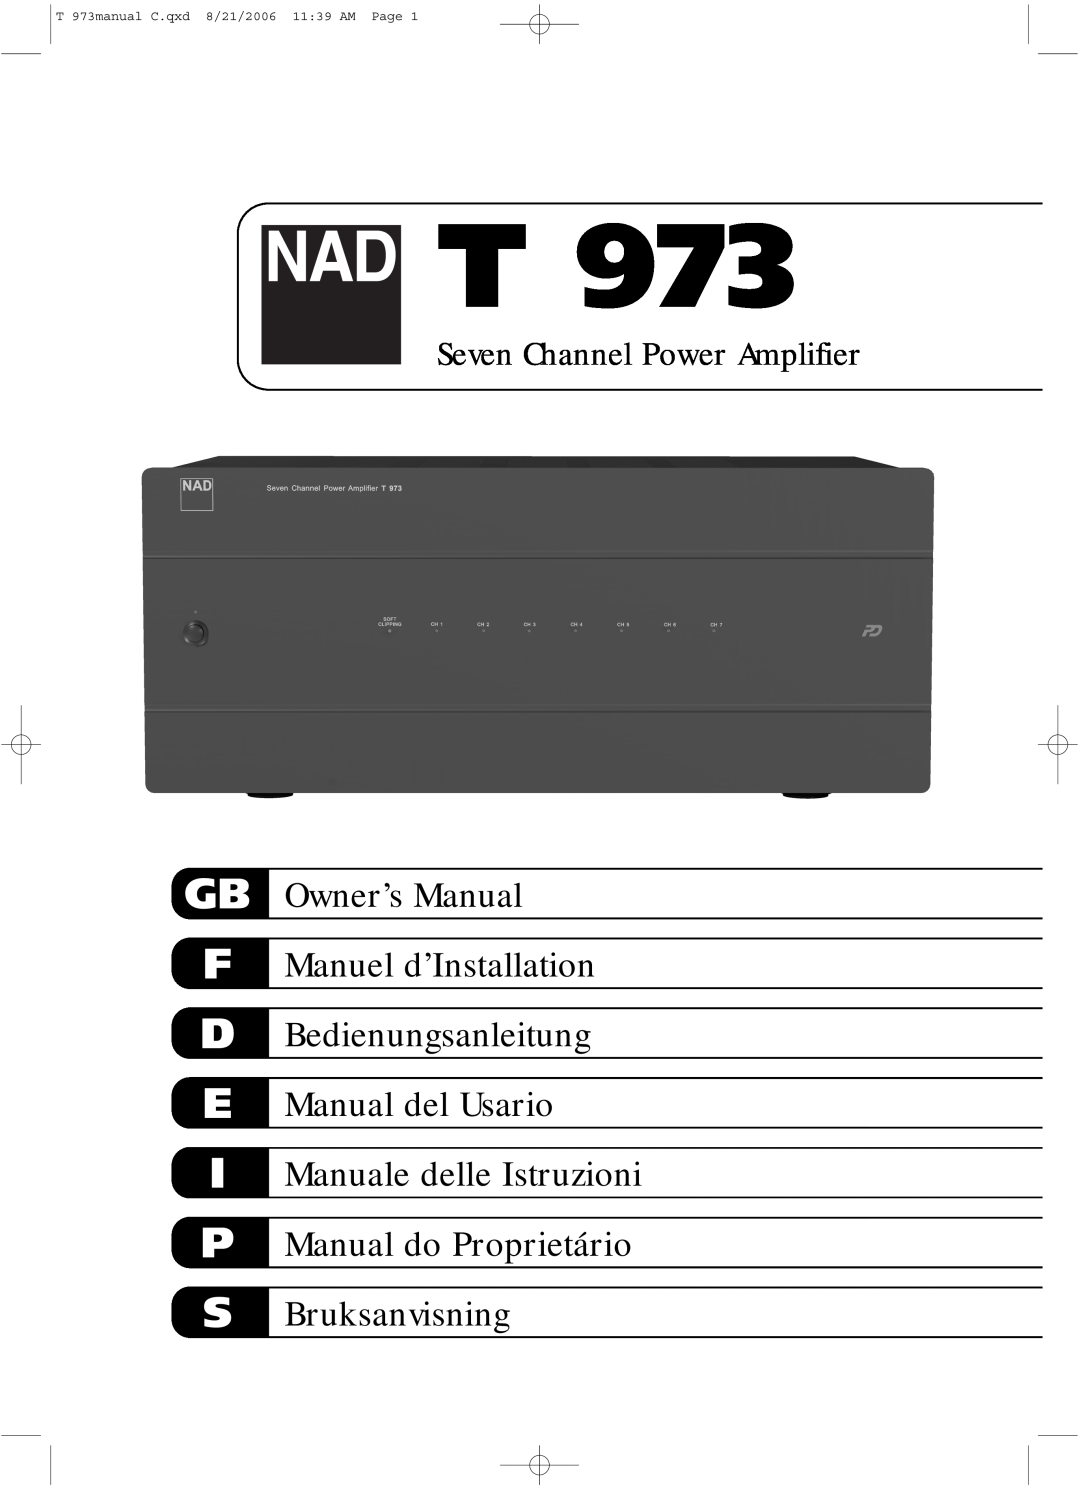 NAD owner manual Gb F D E I P S, T 973manual C.qxd 8/21/2006 11 39 AM Page, Bedienungsanleitung Manual del Usario 